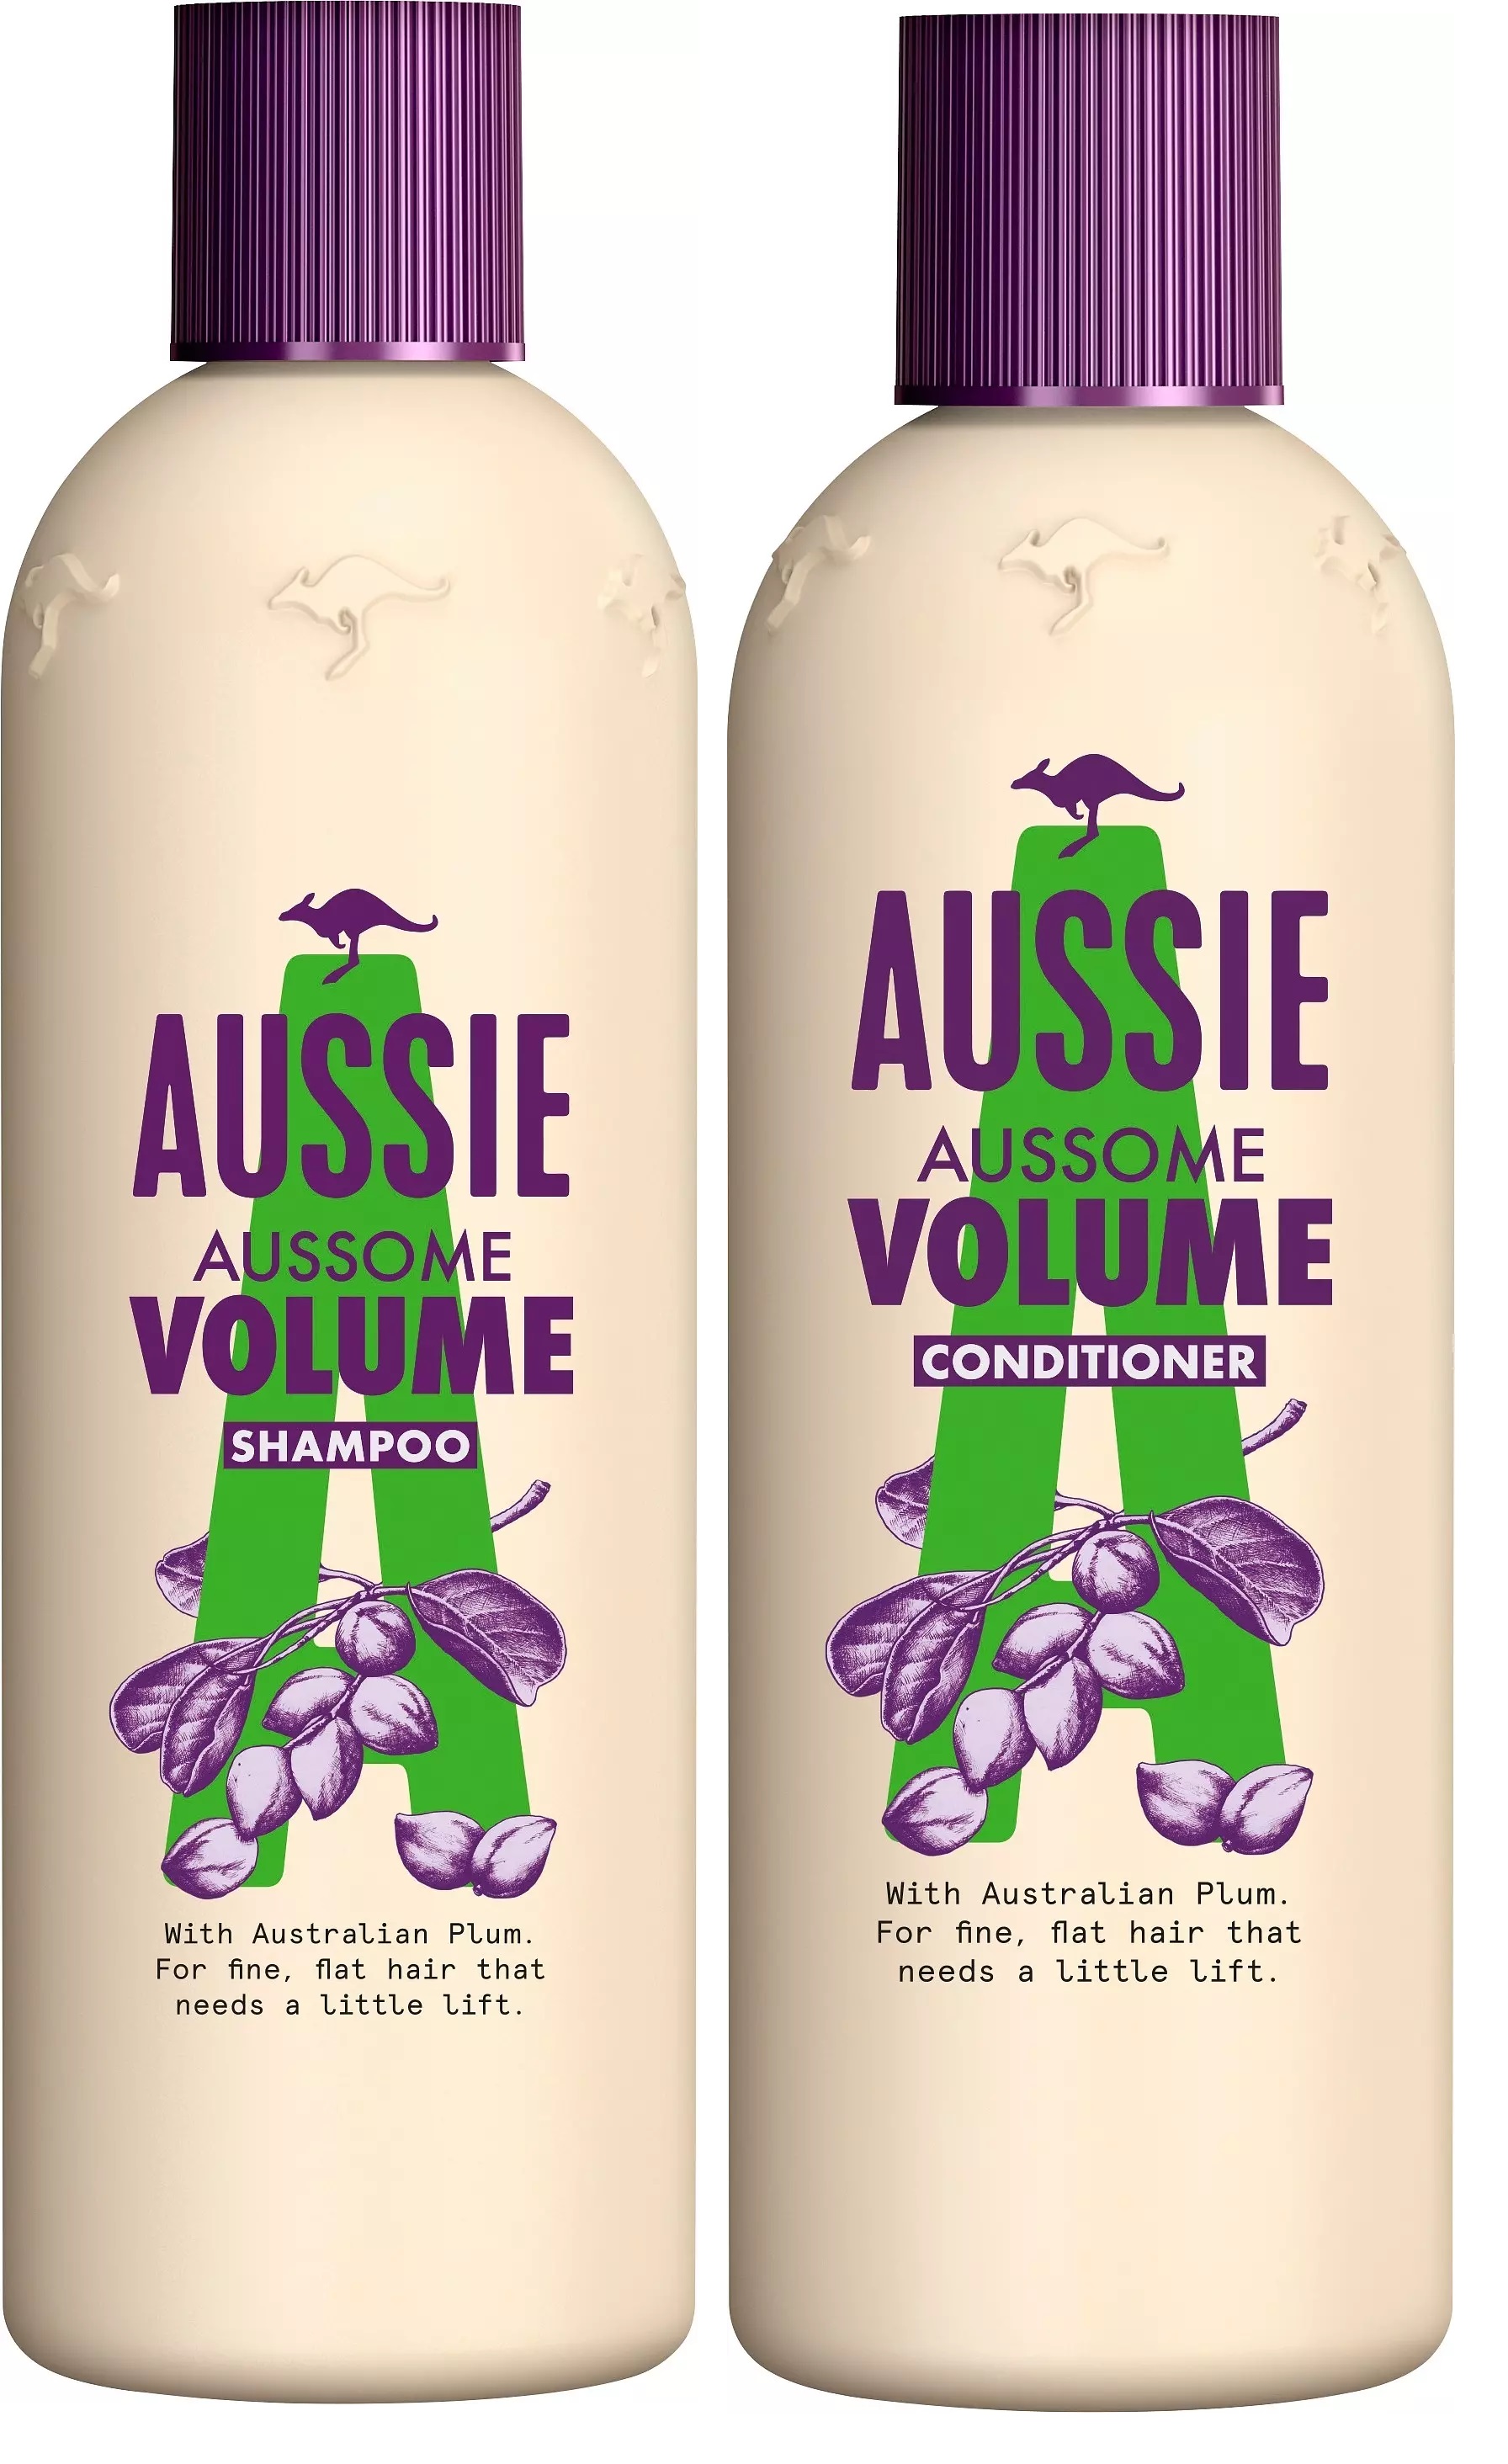 Aussie Assome Volume Shampoo + Conditioner